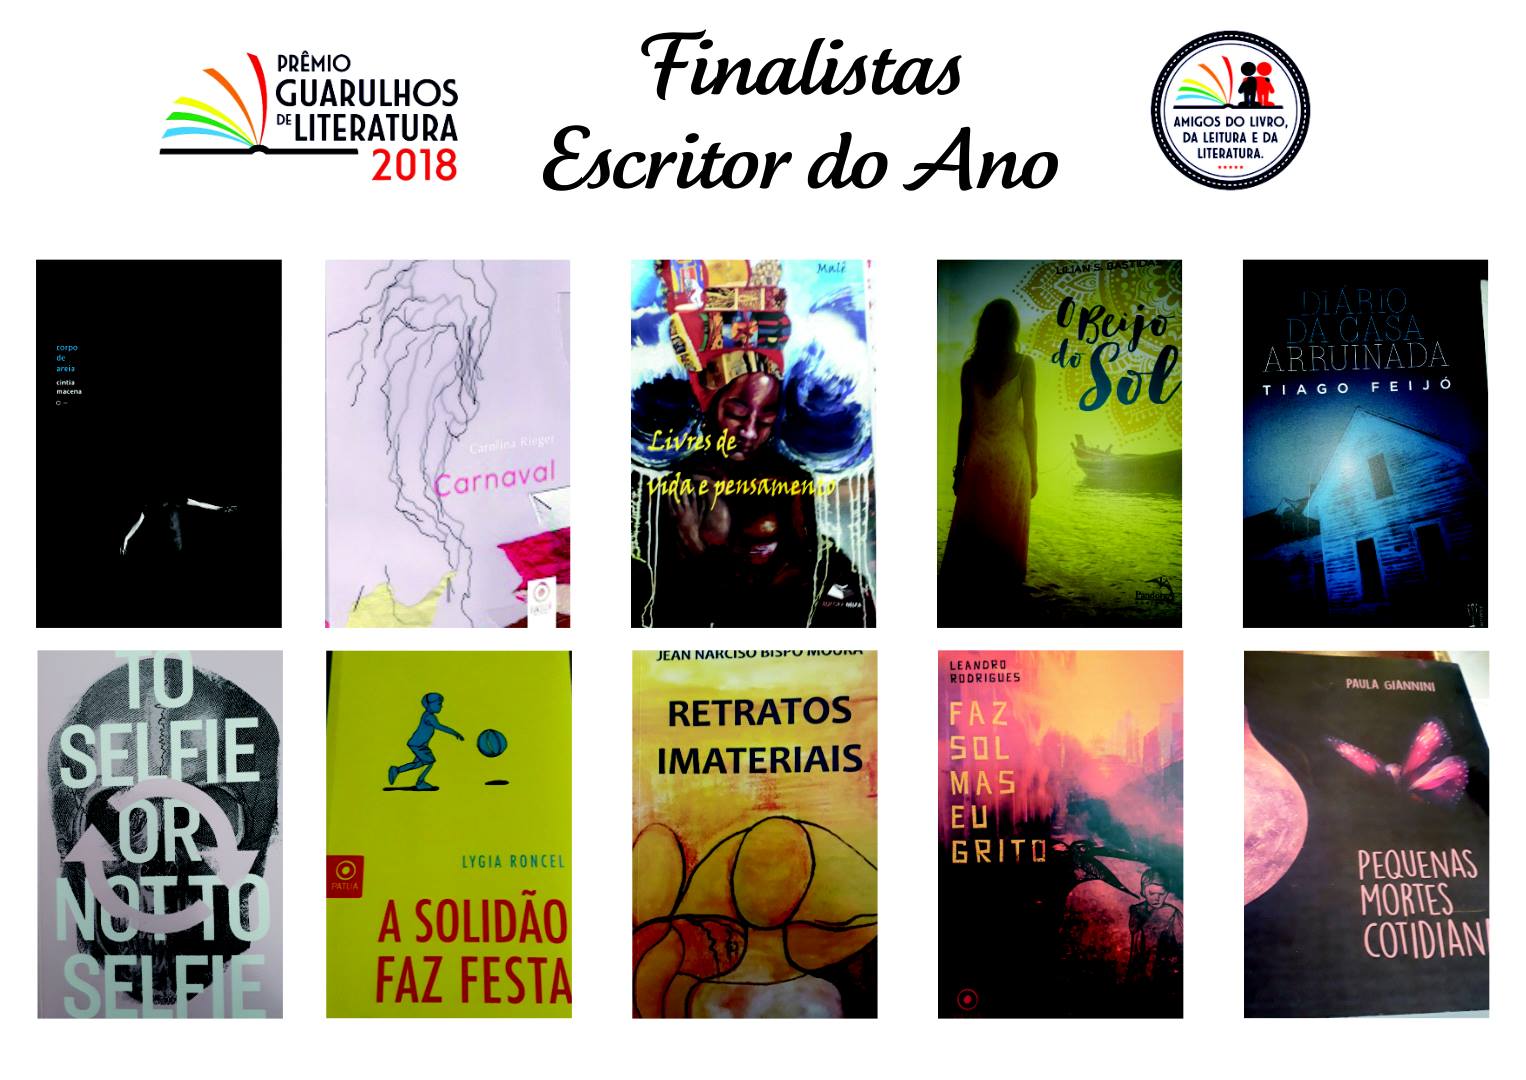 PREMIO GUARULHOS FINALISTA 2018 - Finalistas do Prêmio Guarulhos de Literatura - 2018